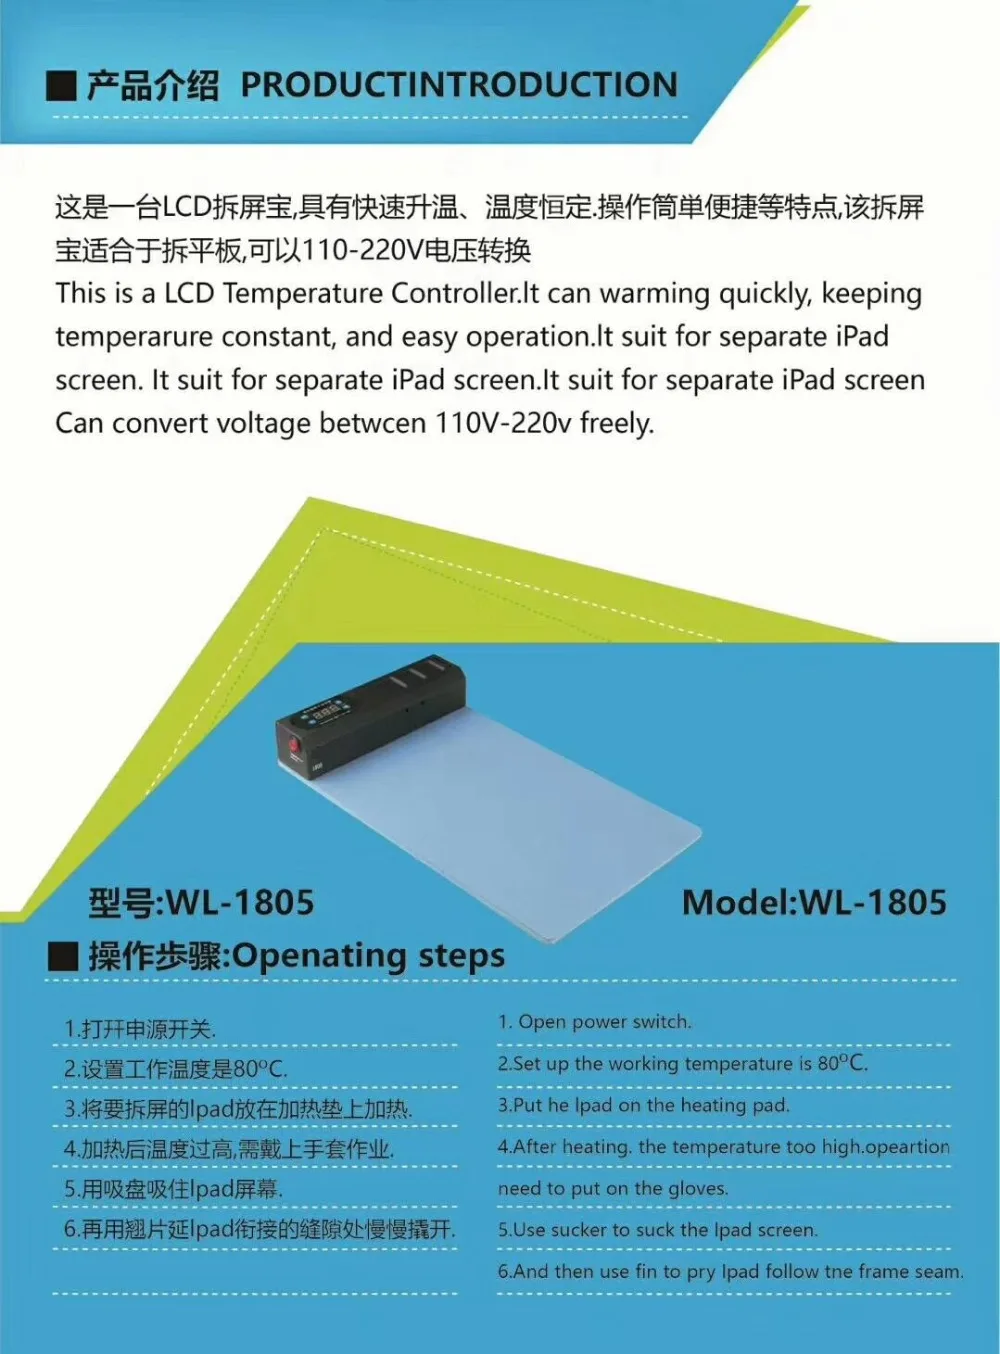 BOZAN телефон железная горячая пластина ЖК-экран сепаратор машина для iPhone для samsung для iPad планшета ремонт инструмента Ремонт